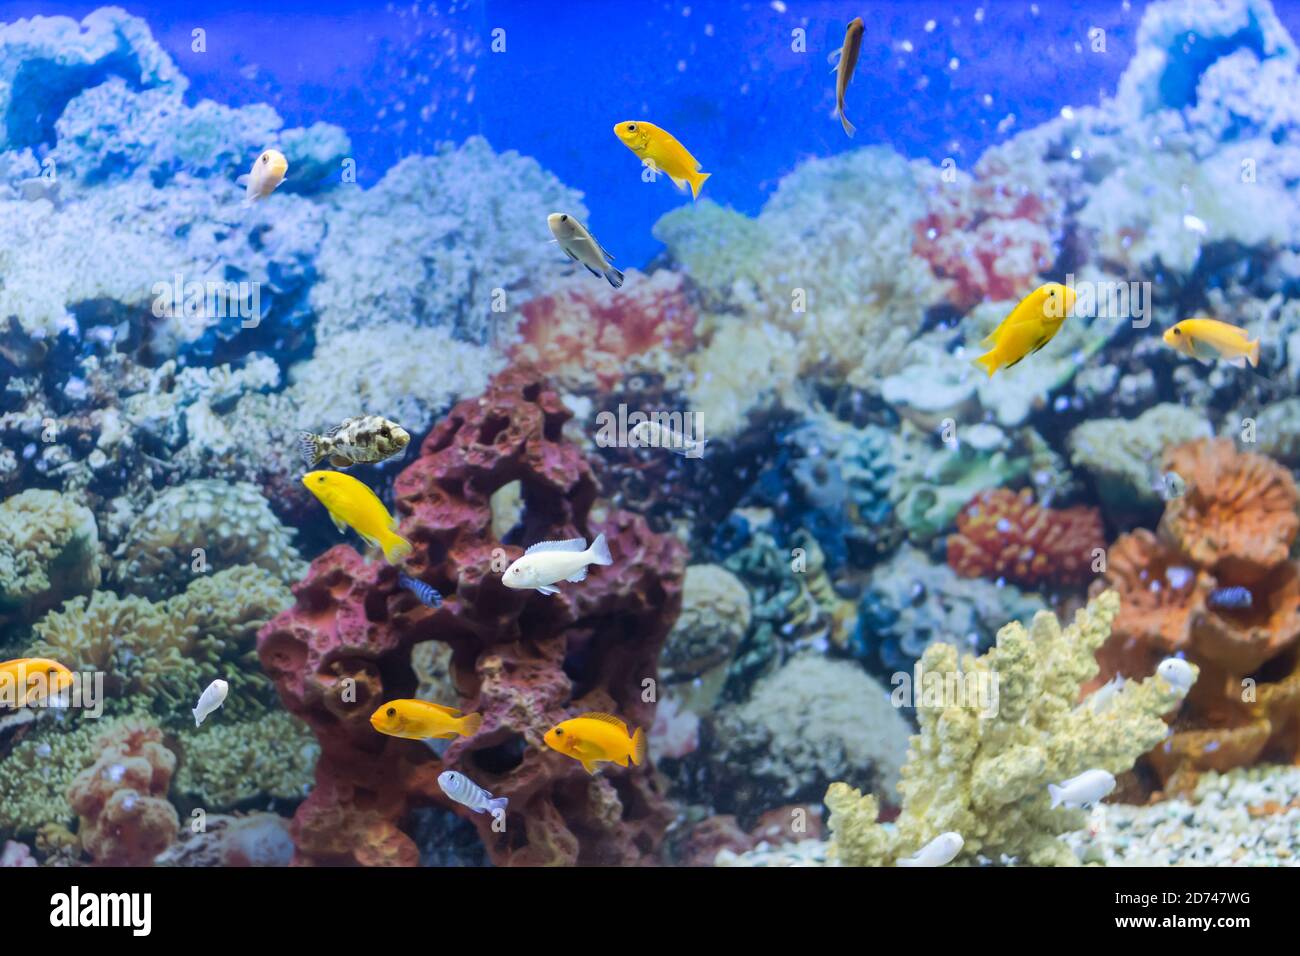 multi-colored fish in the aquarium Stock Photo